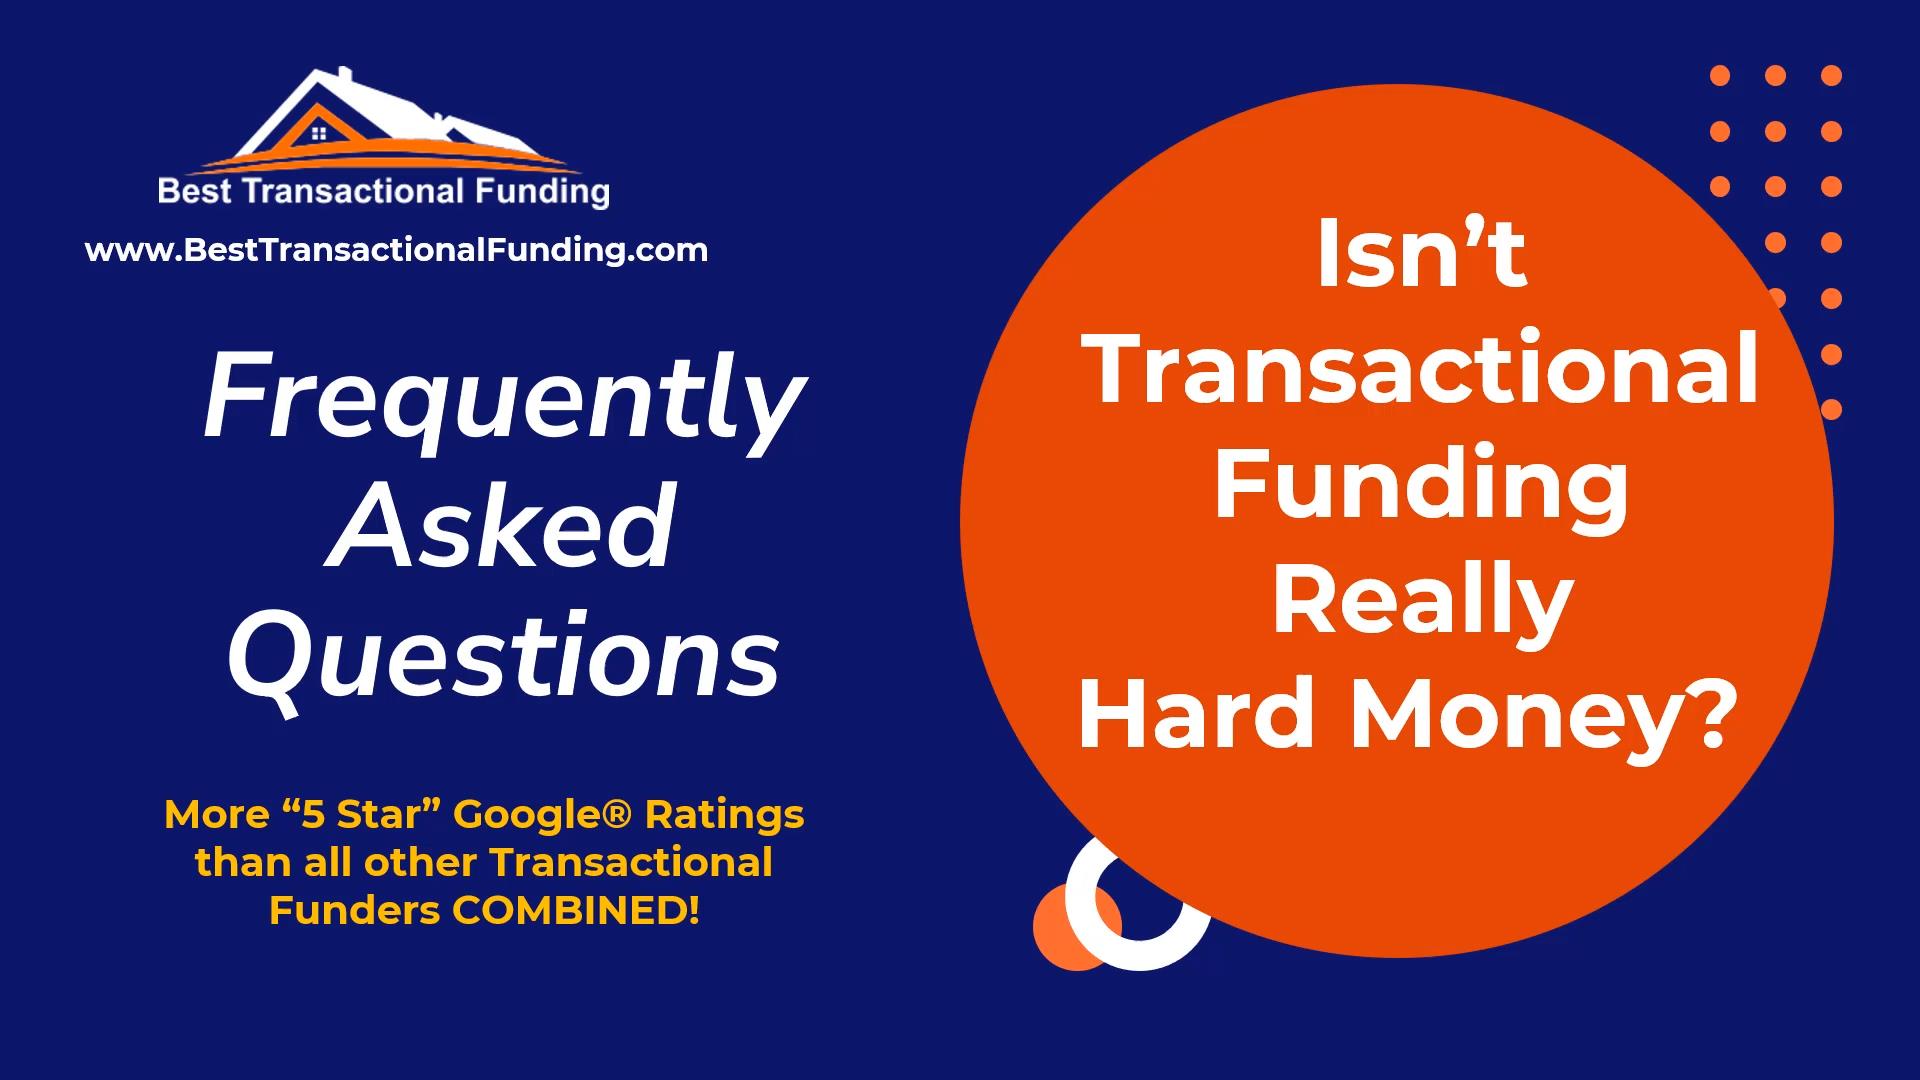 Transactional Funding Versus Hard Money